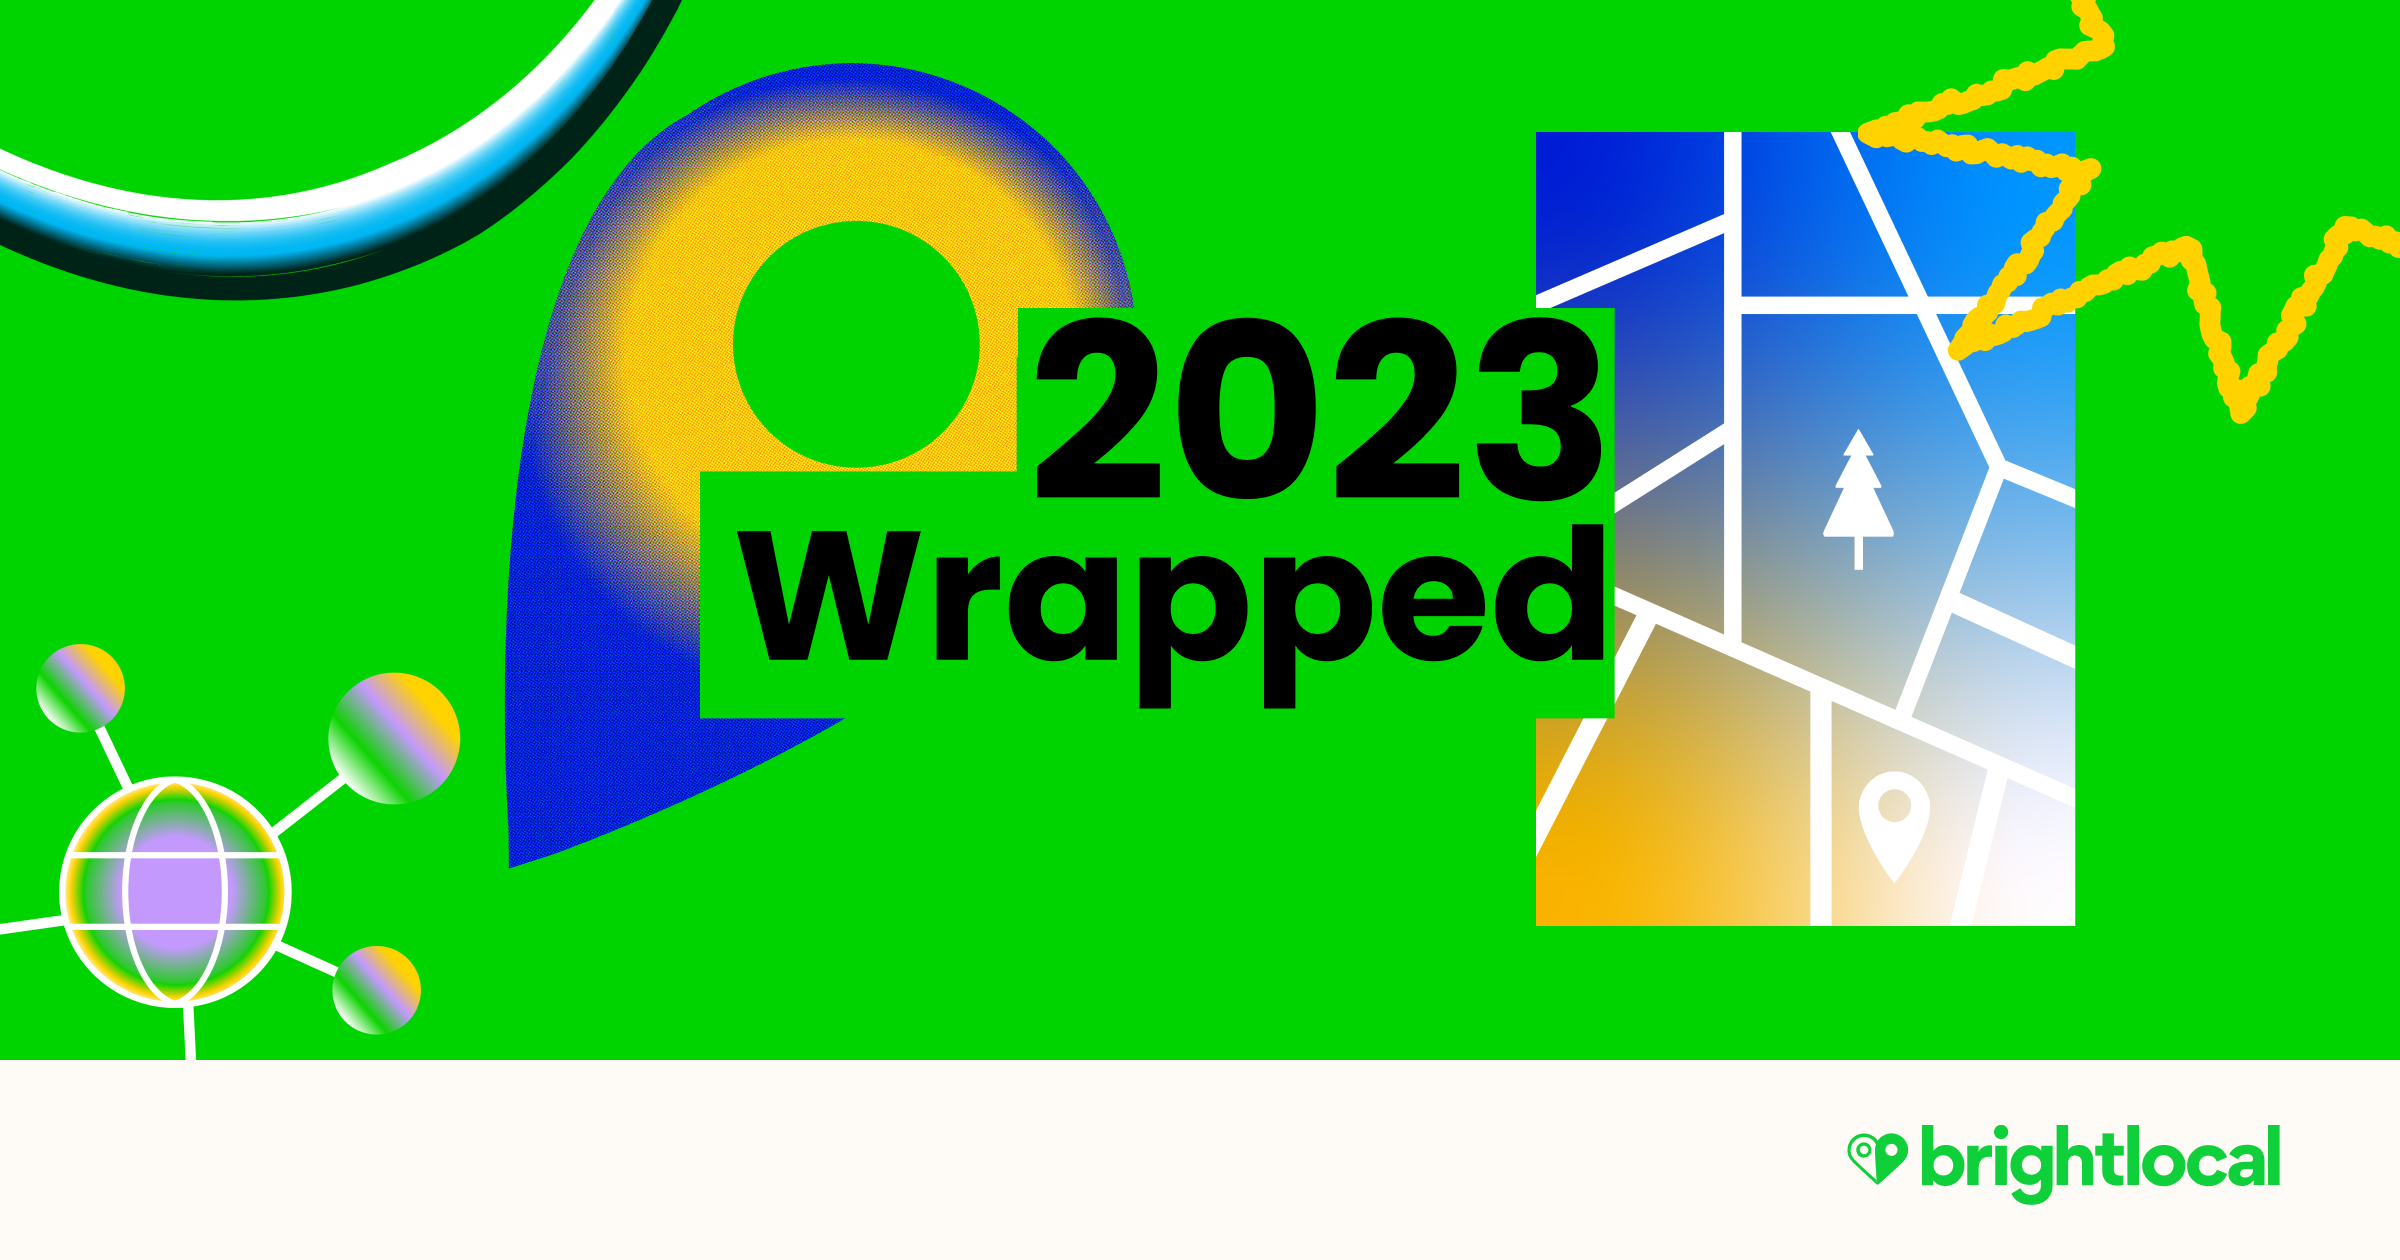 Local SEO Wrapped: 2023 – BrightLocal